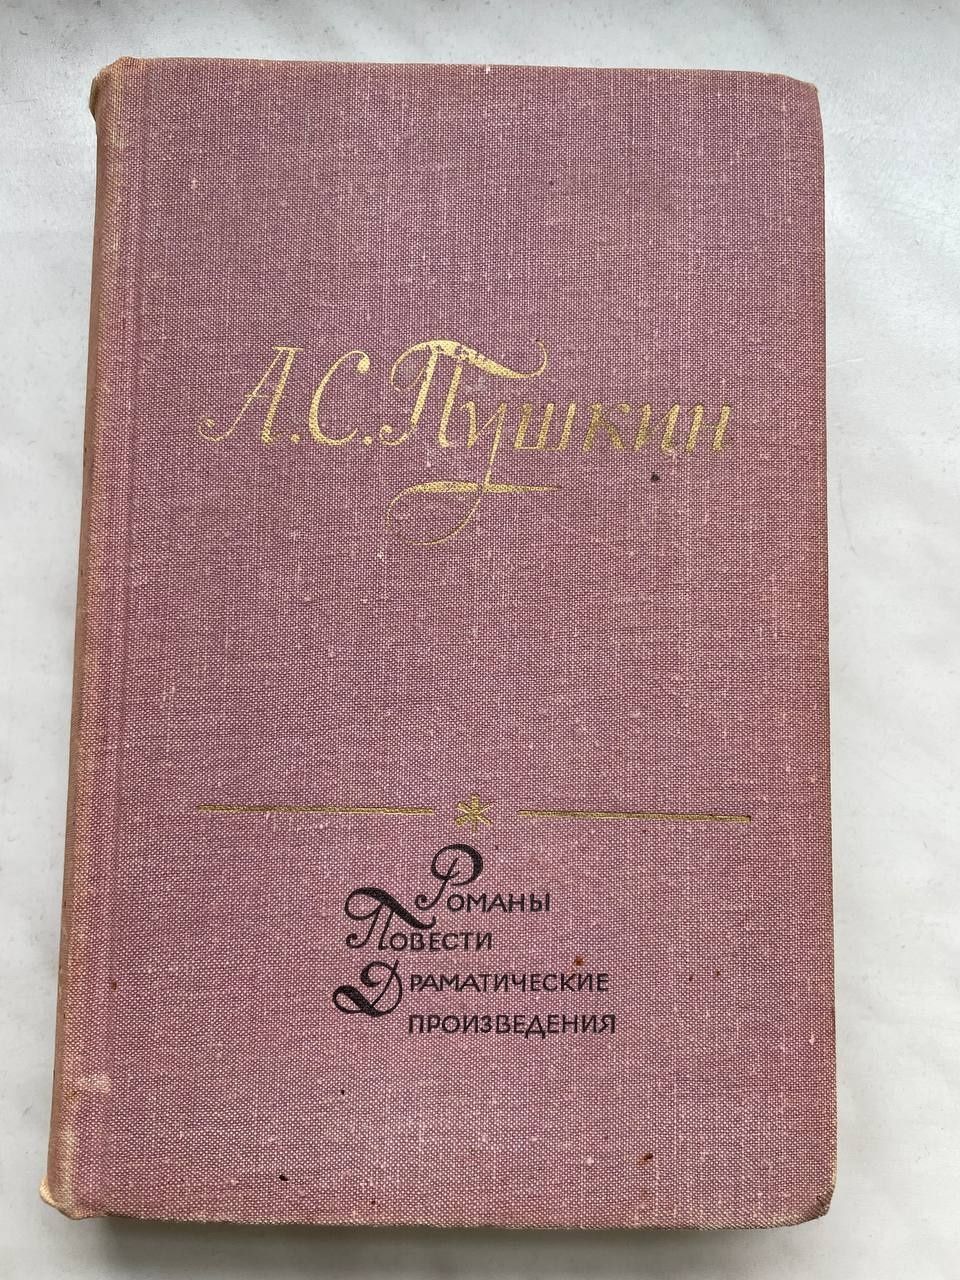 Пушкин повести и рассказы 1973